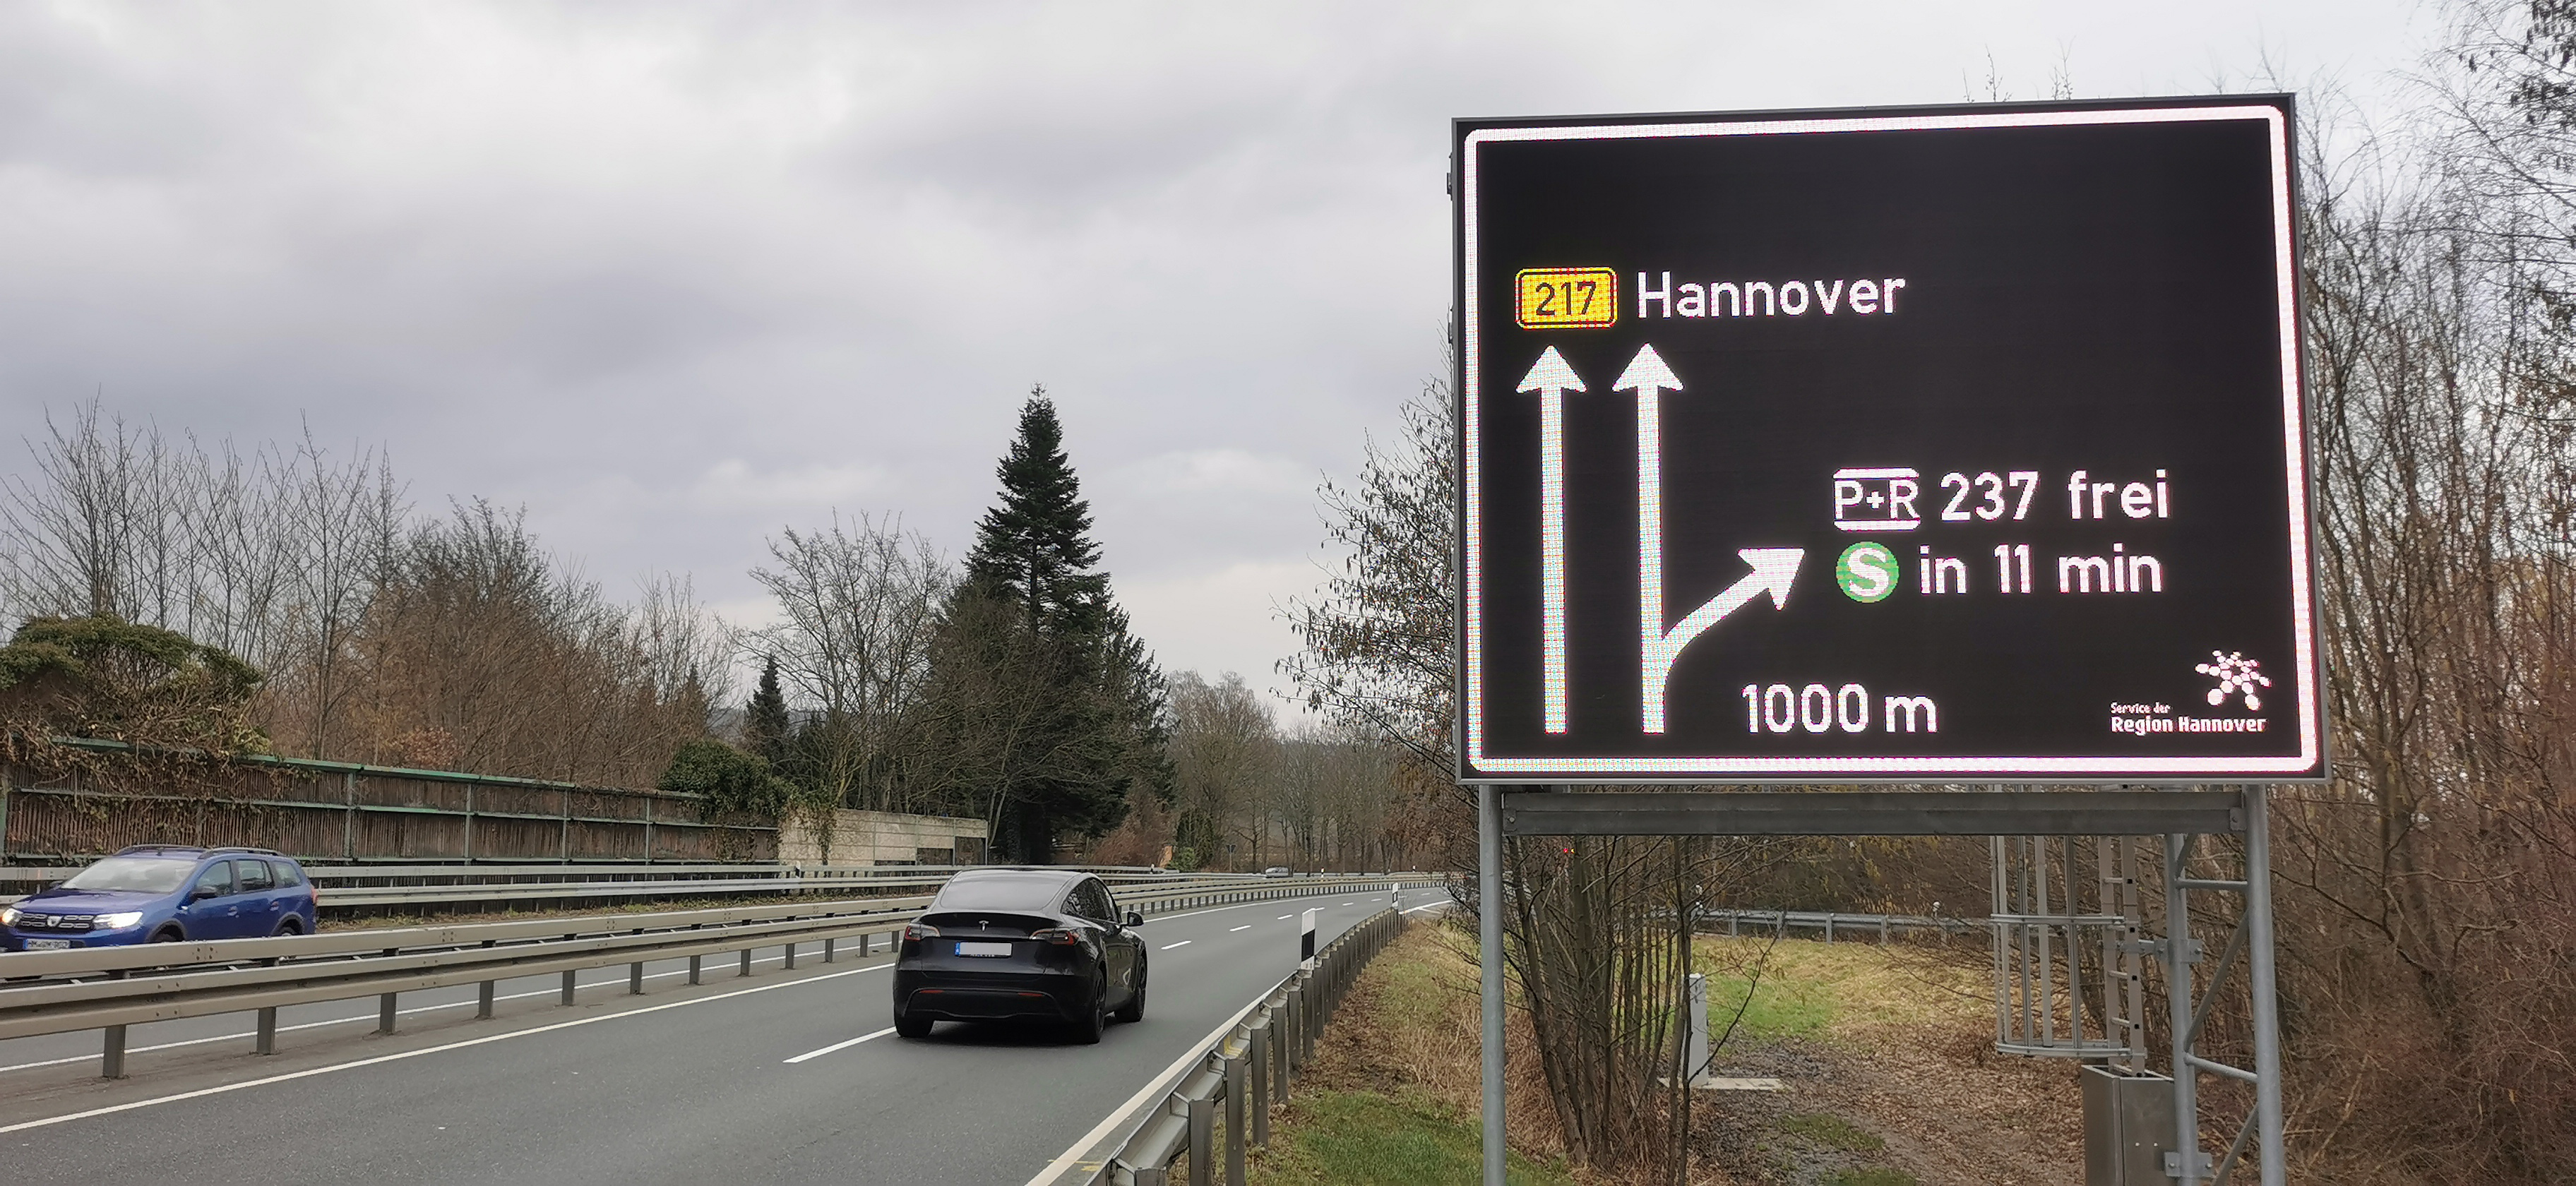 Augmented Straßenschilder  Visit Hannover - Visit Hannover